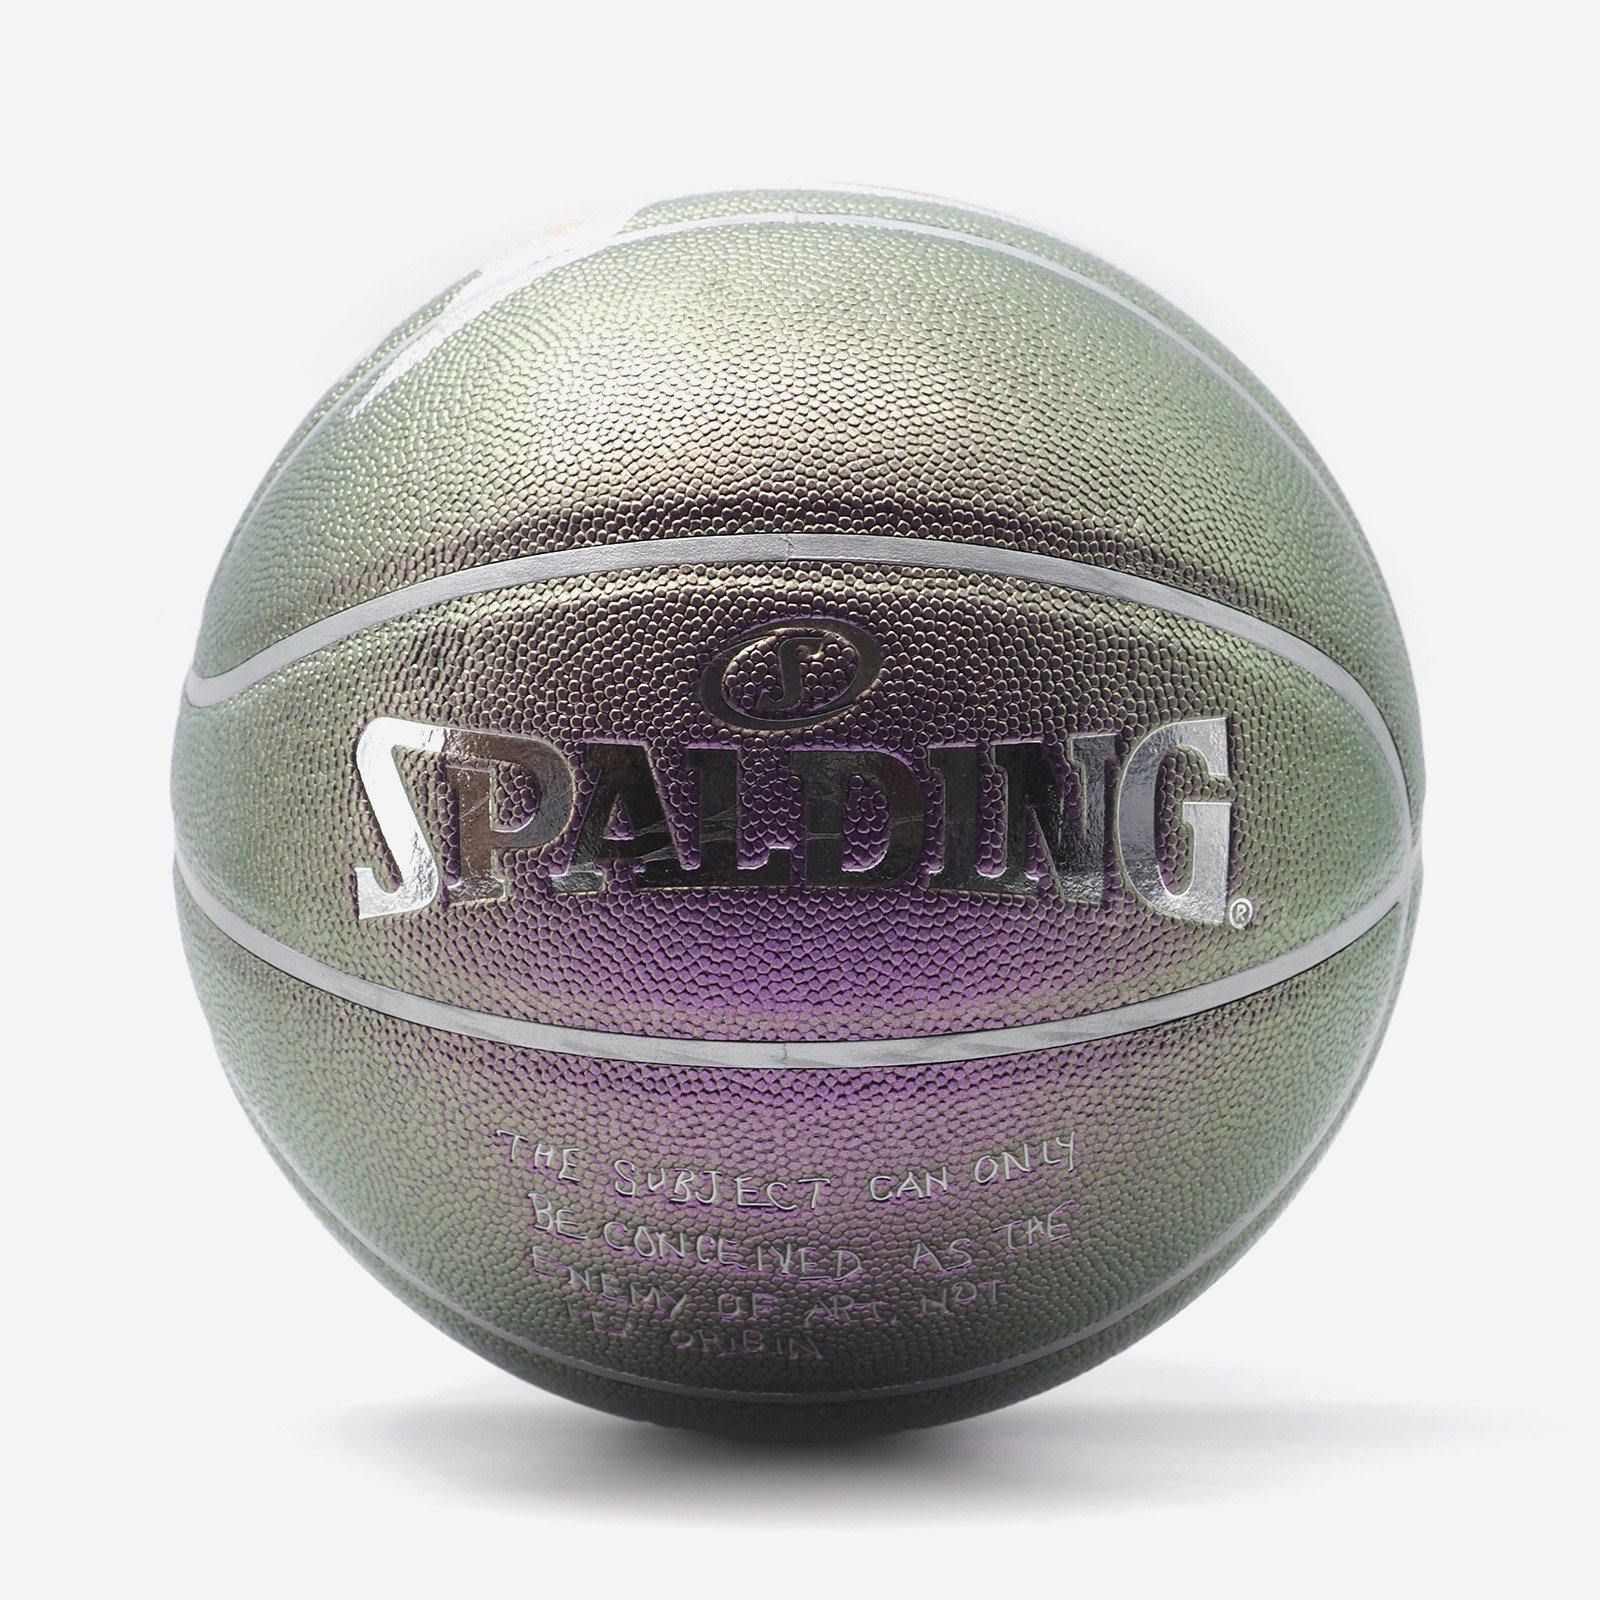 Supreme/Bernadette Corporation Spaulding Basketball - UG.SHAFT